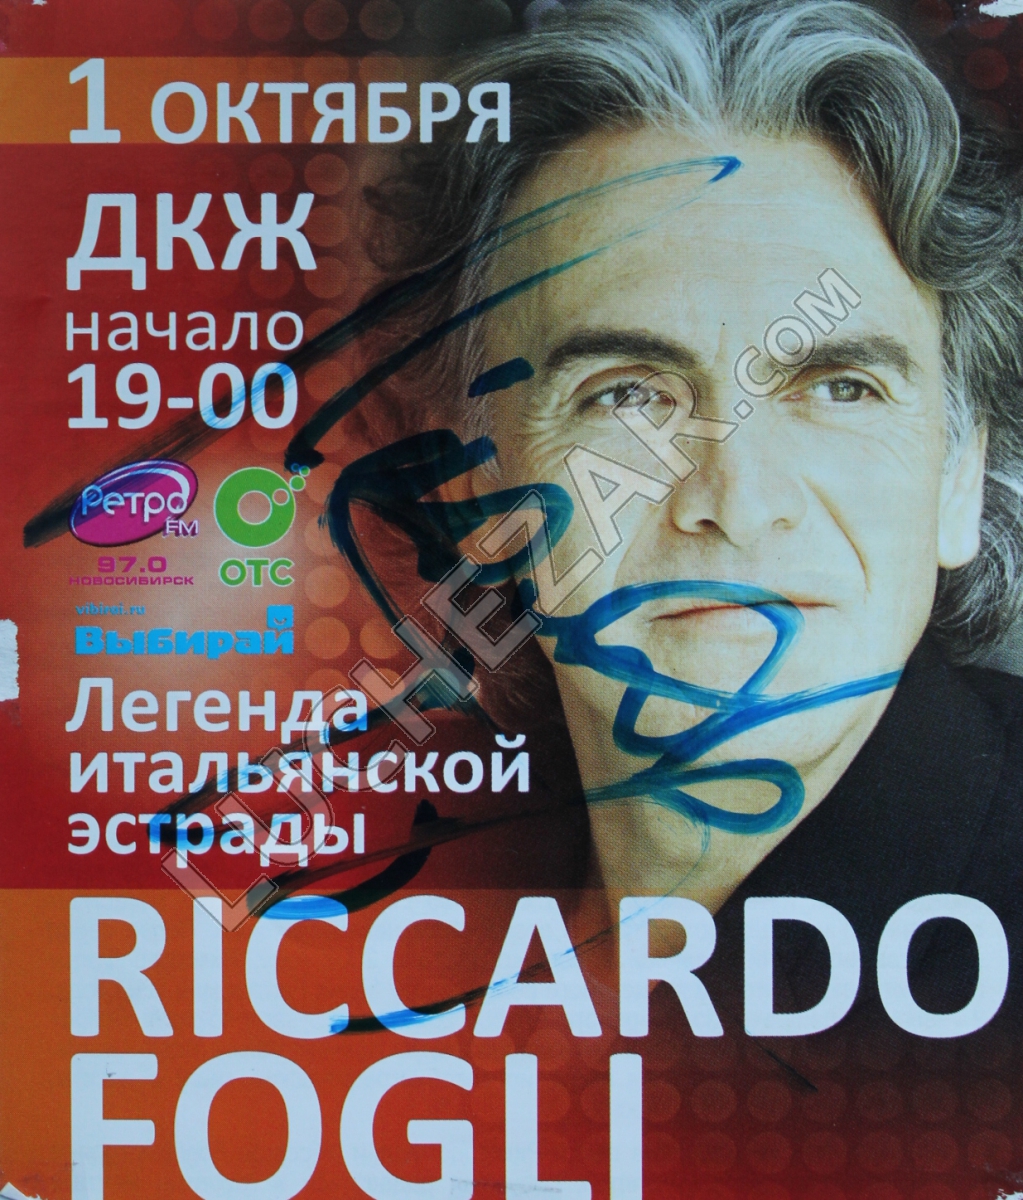 Риккардо Фольи (Riccardo Fogli)